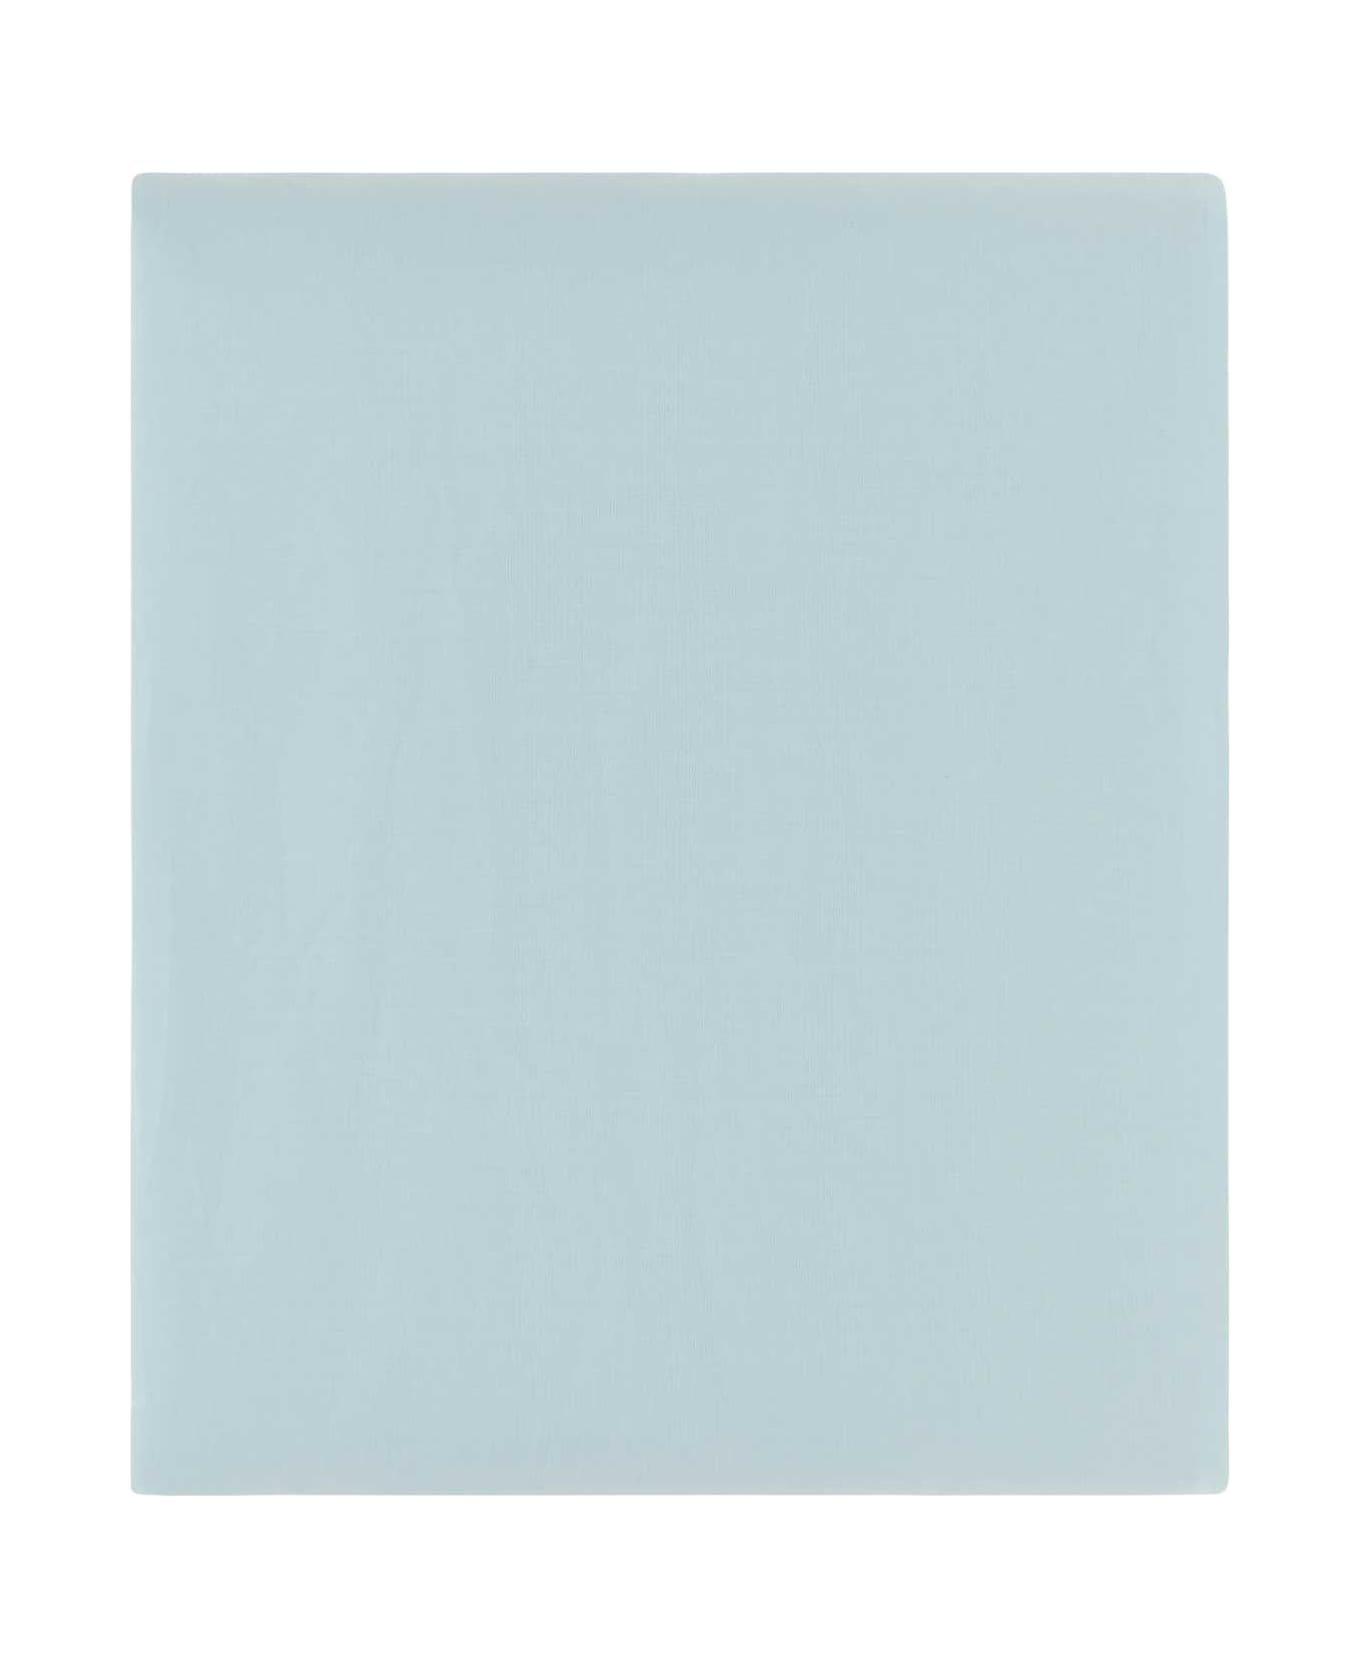 Tekla Light Blue Cotton Flat Sheet - SKYBLUE